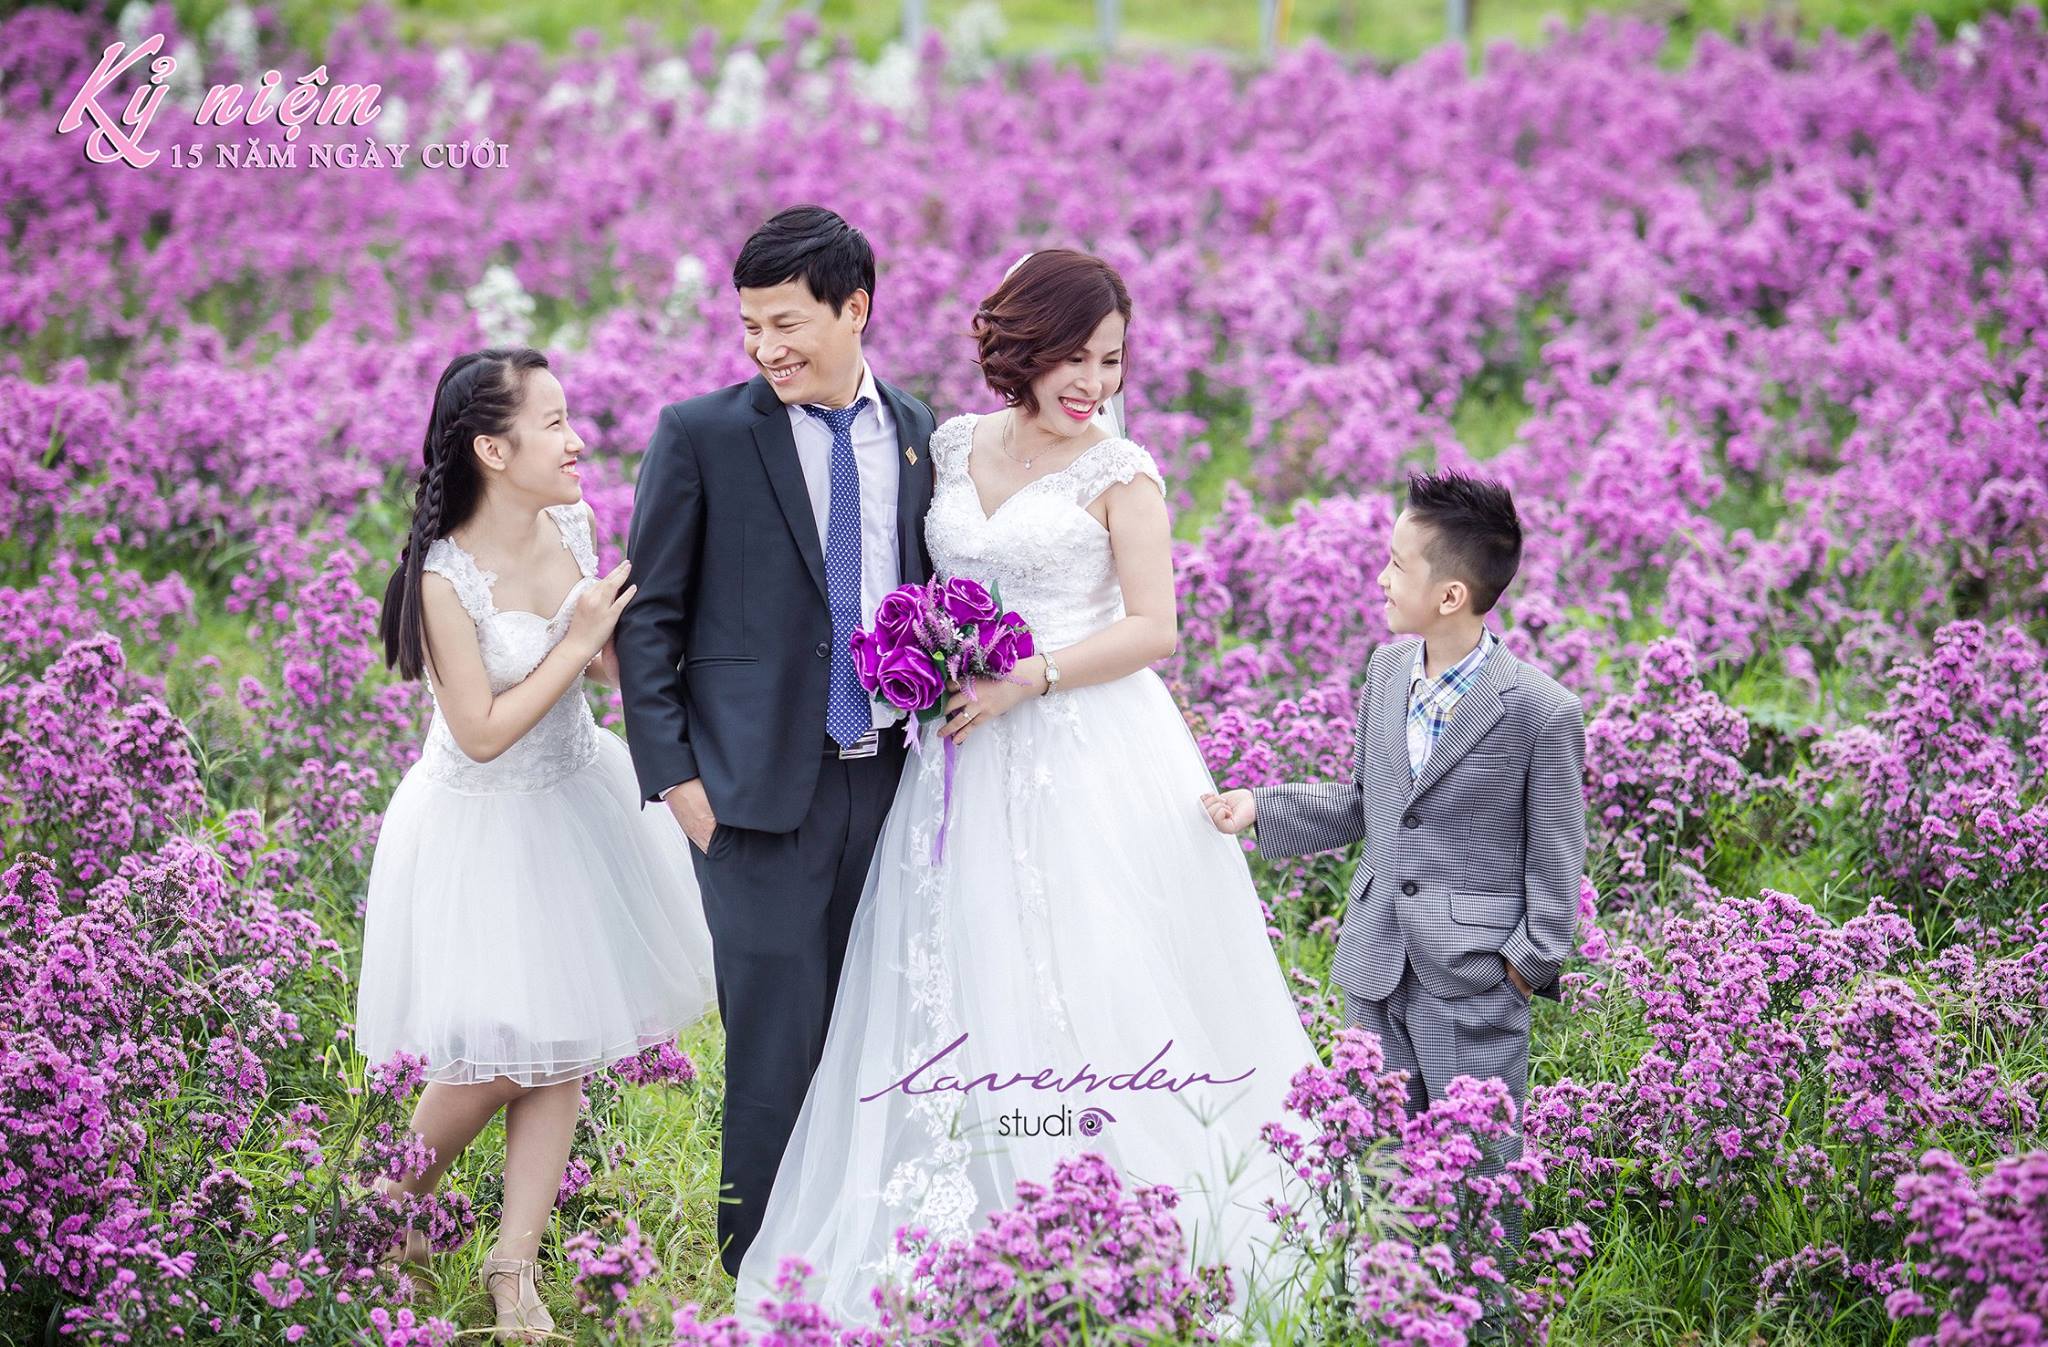 Hãy cùng chúng tôi tạo nên khoảnh khắc đáng nhớ cho gia đình bạn bằng cách chụp ảnh tại đồi hoa Lavender thơ mộng. Bạn và gia đình sẽ được tận hưởng không gian xanh mát, hương thơm của hoa Lavender và lưu giữ lại những kỷ niệm đẹp nhất trong cuộc đời.